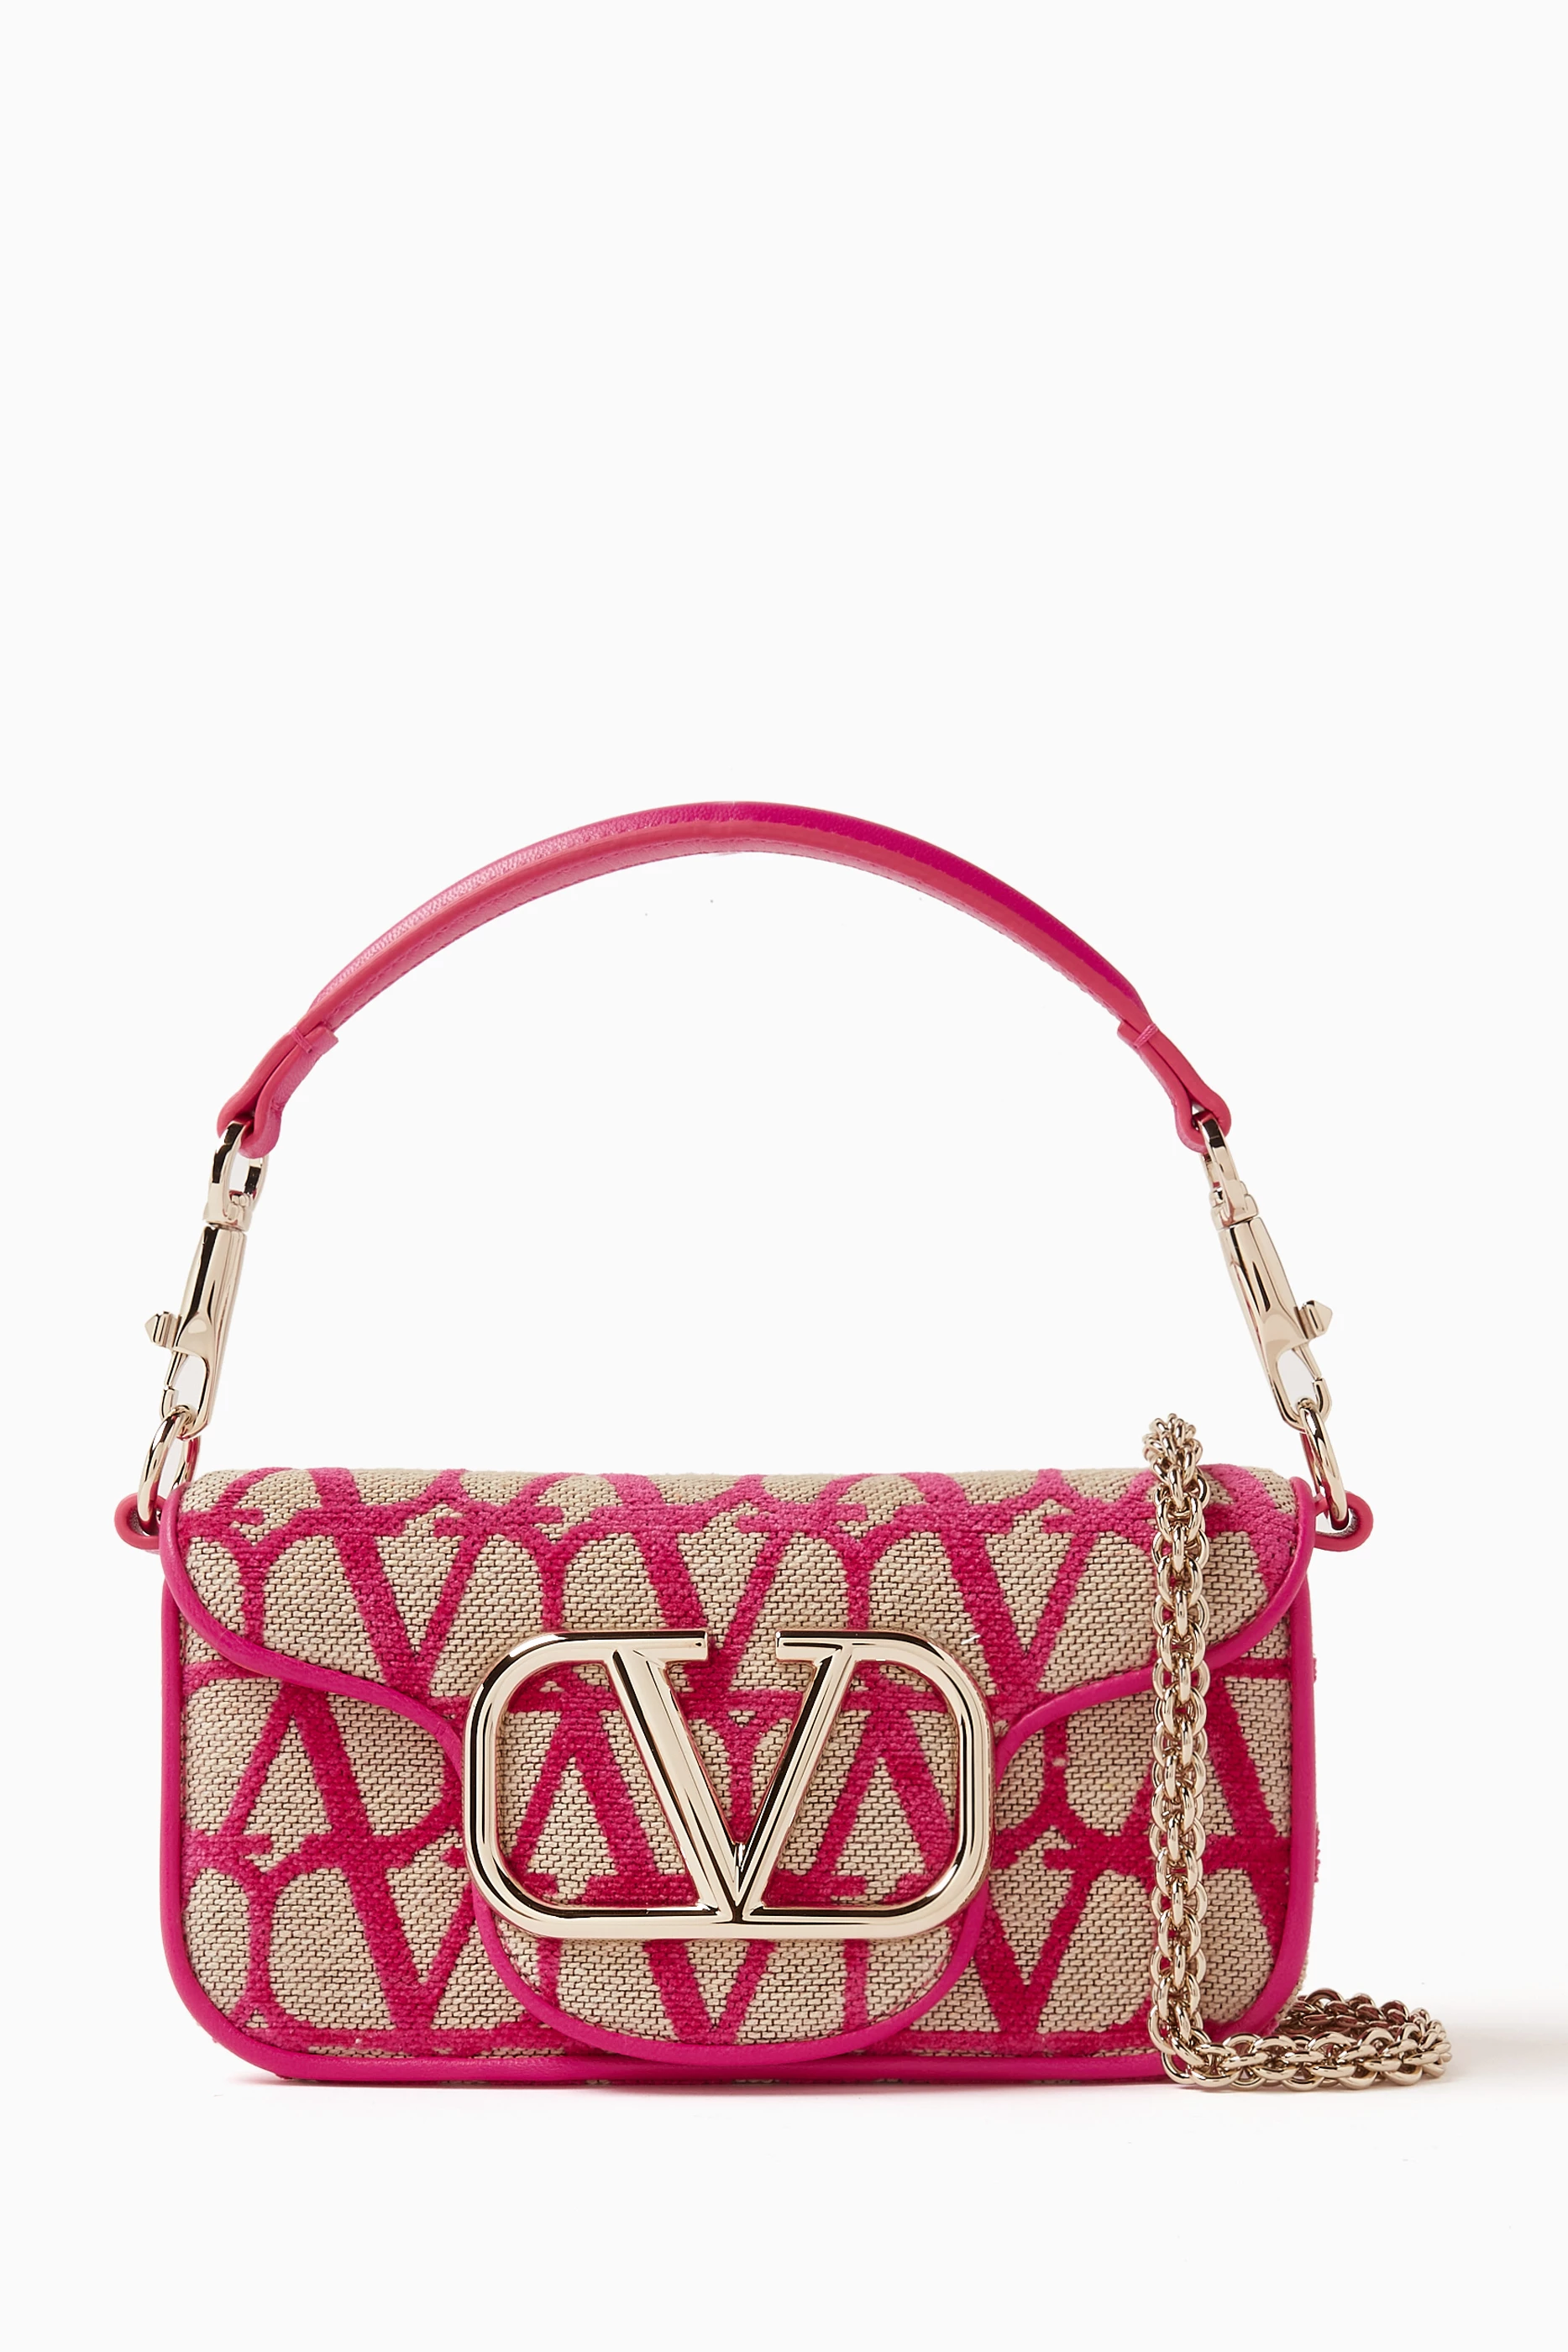 Loco Small Toile Iconographe Shoulder Bag in Pink - Valentino Garavani